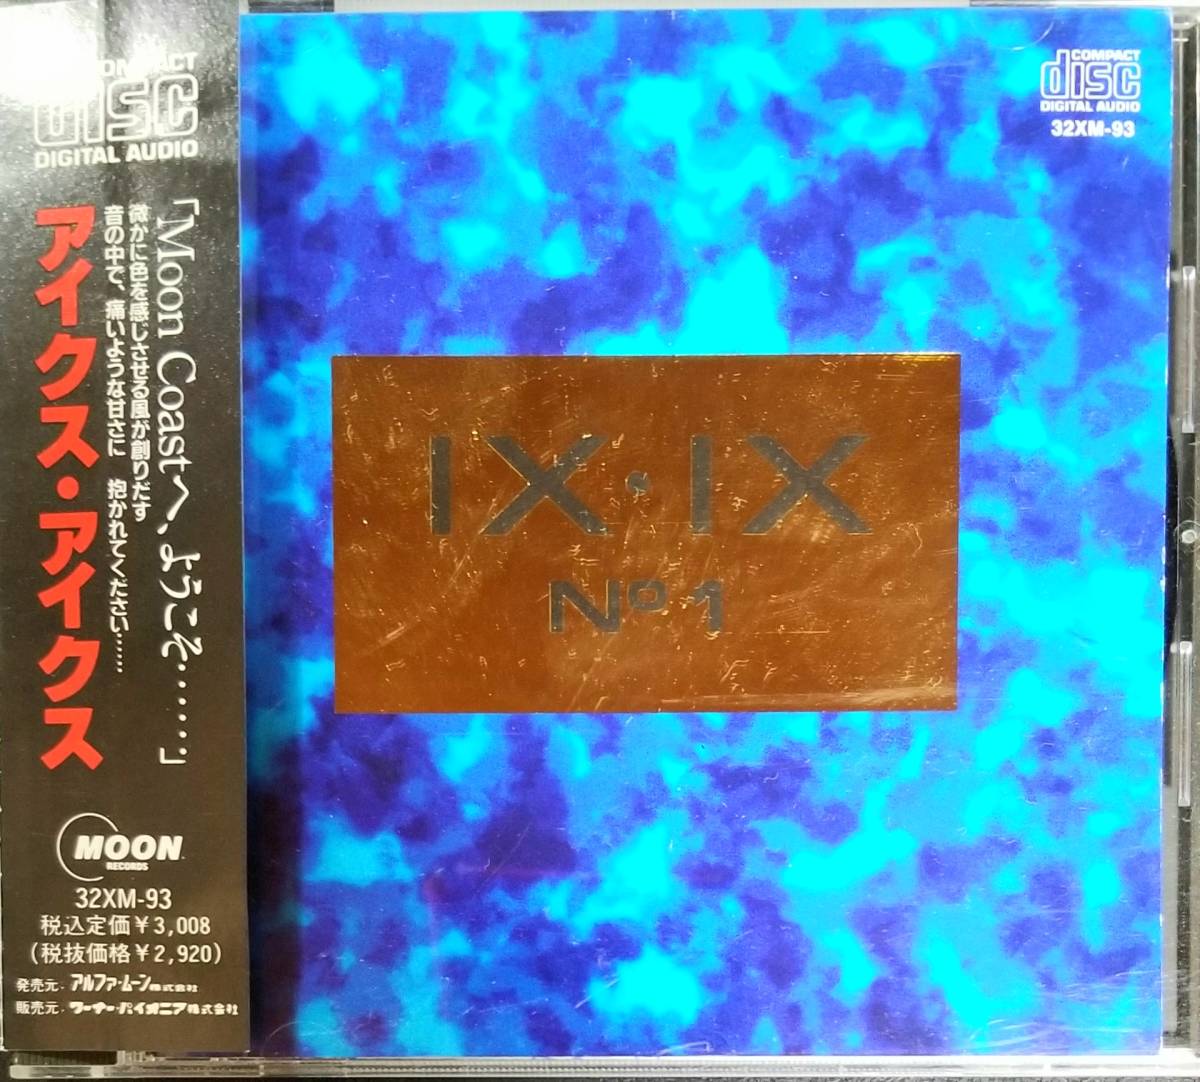 R17貴重帯付き/送料無料■IXIX(アイクスアイクス)「NO1」CD(32XM-93) IX・IX_画像1